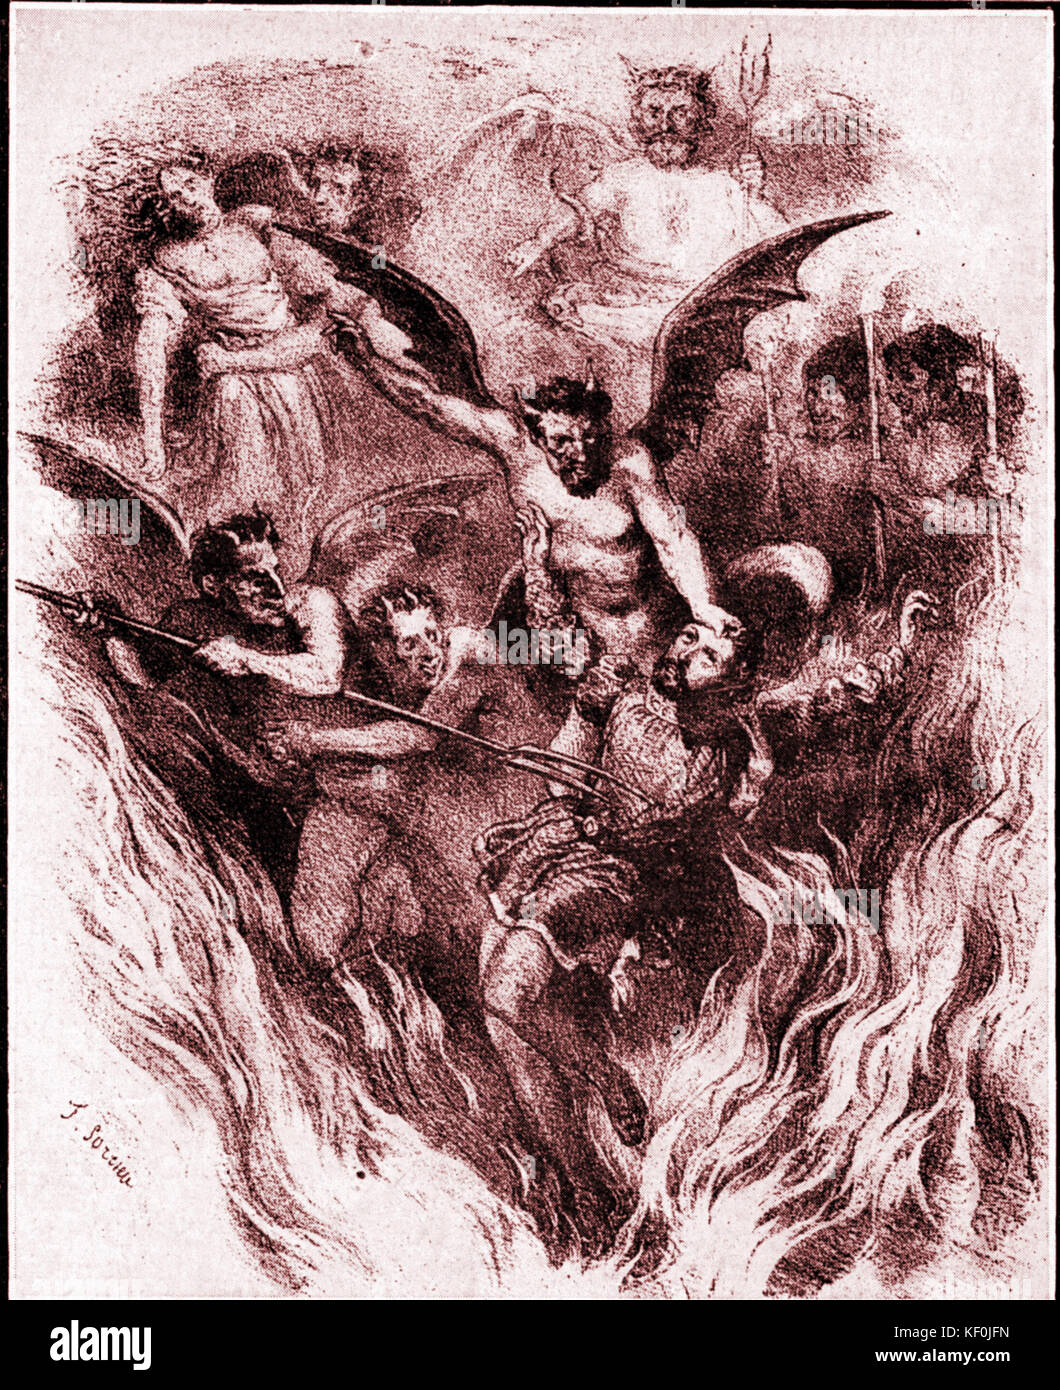 La Damnation Faust de Hector Berlioz, partition de l'Orchestre de Frederic Sorrieu (1854). Compositeur français, 1803-1869. Banque D'Images